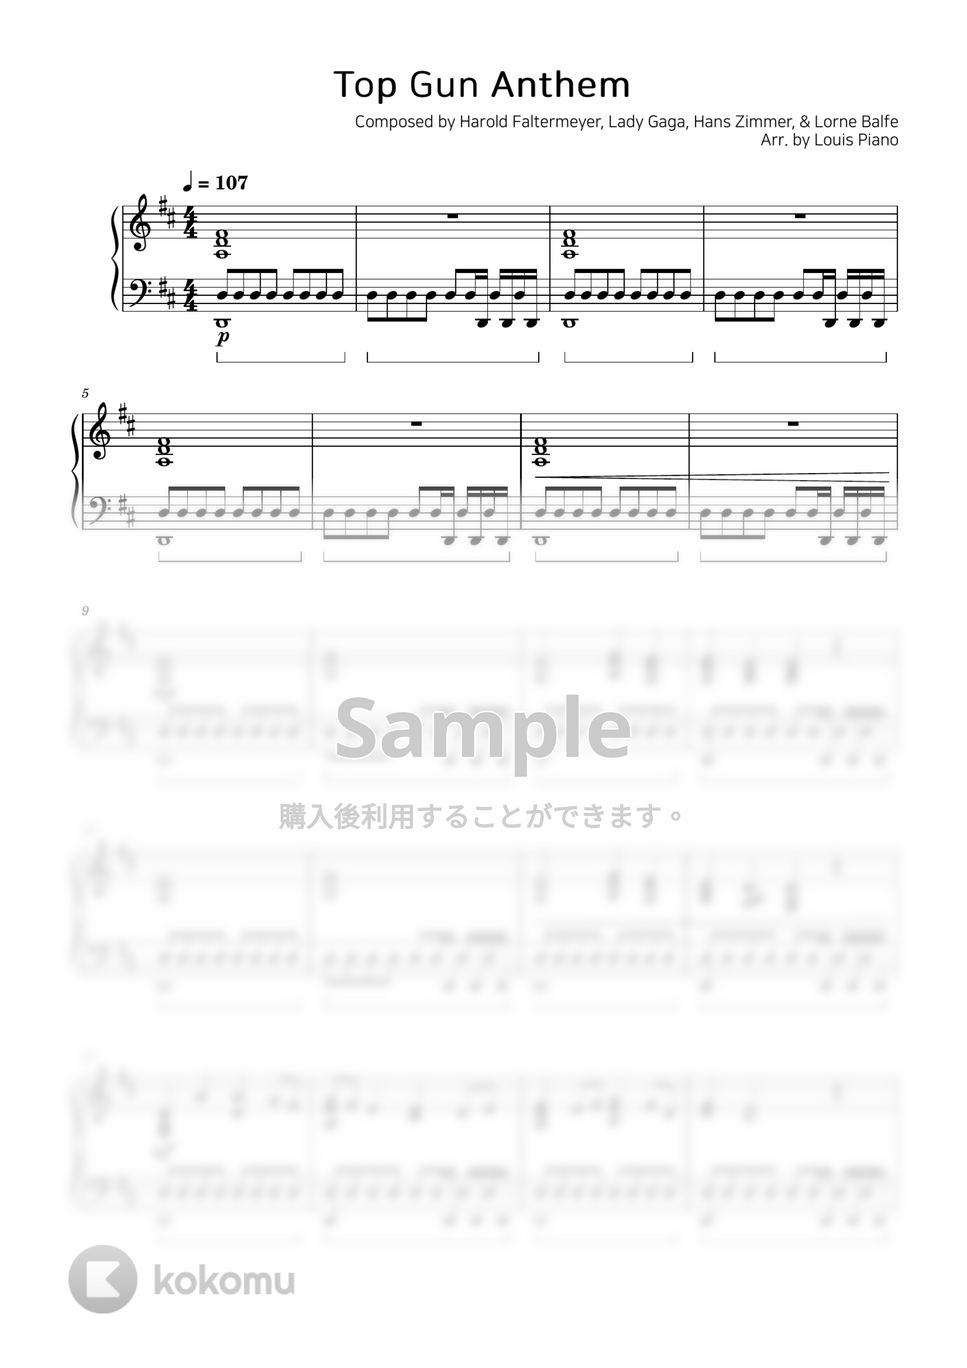 Harold Faltermeyer, Lady Gaga, Hans Zimmer, & Lorne Balfe - Top Gun Anthem (トップガン) by LOUIS PIANO